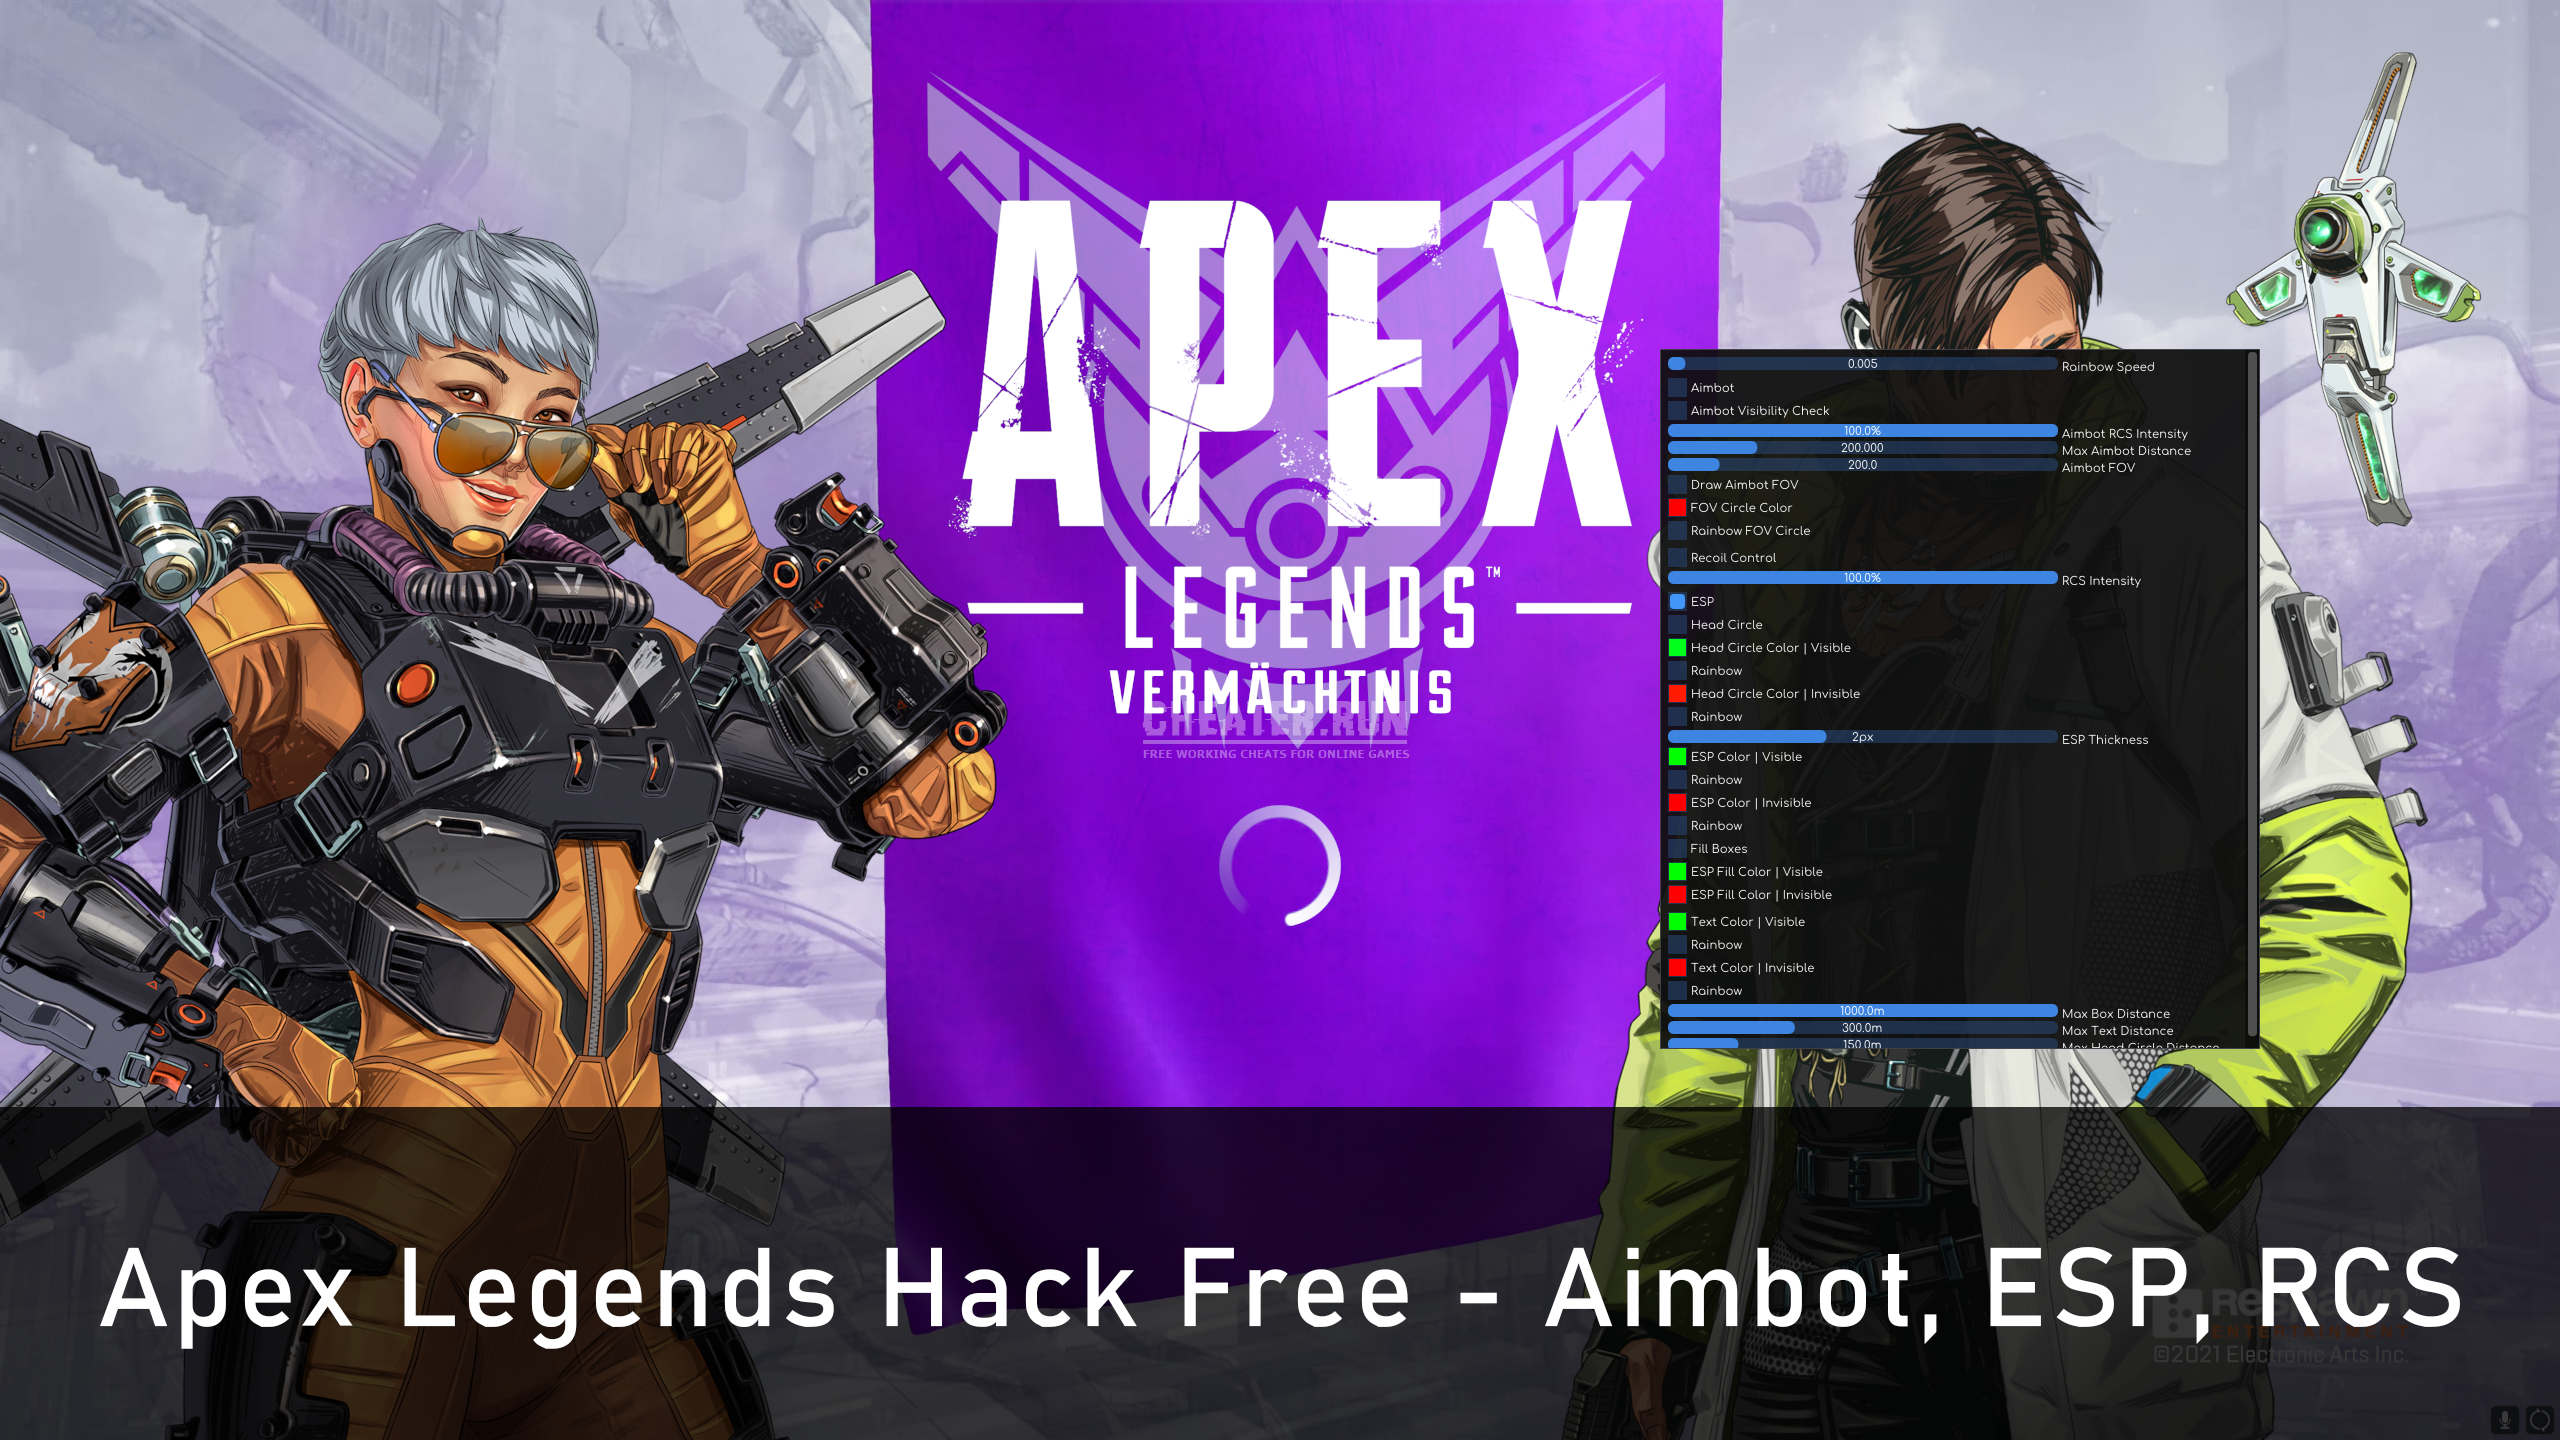 Apex Legends Hack Free - Aimbot, ESP, RCS